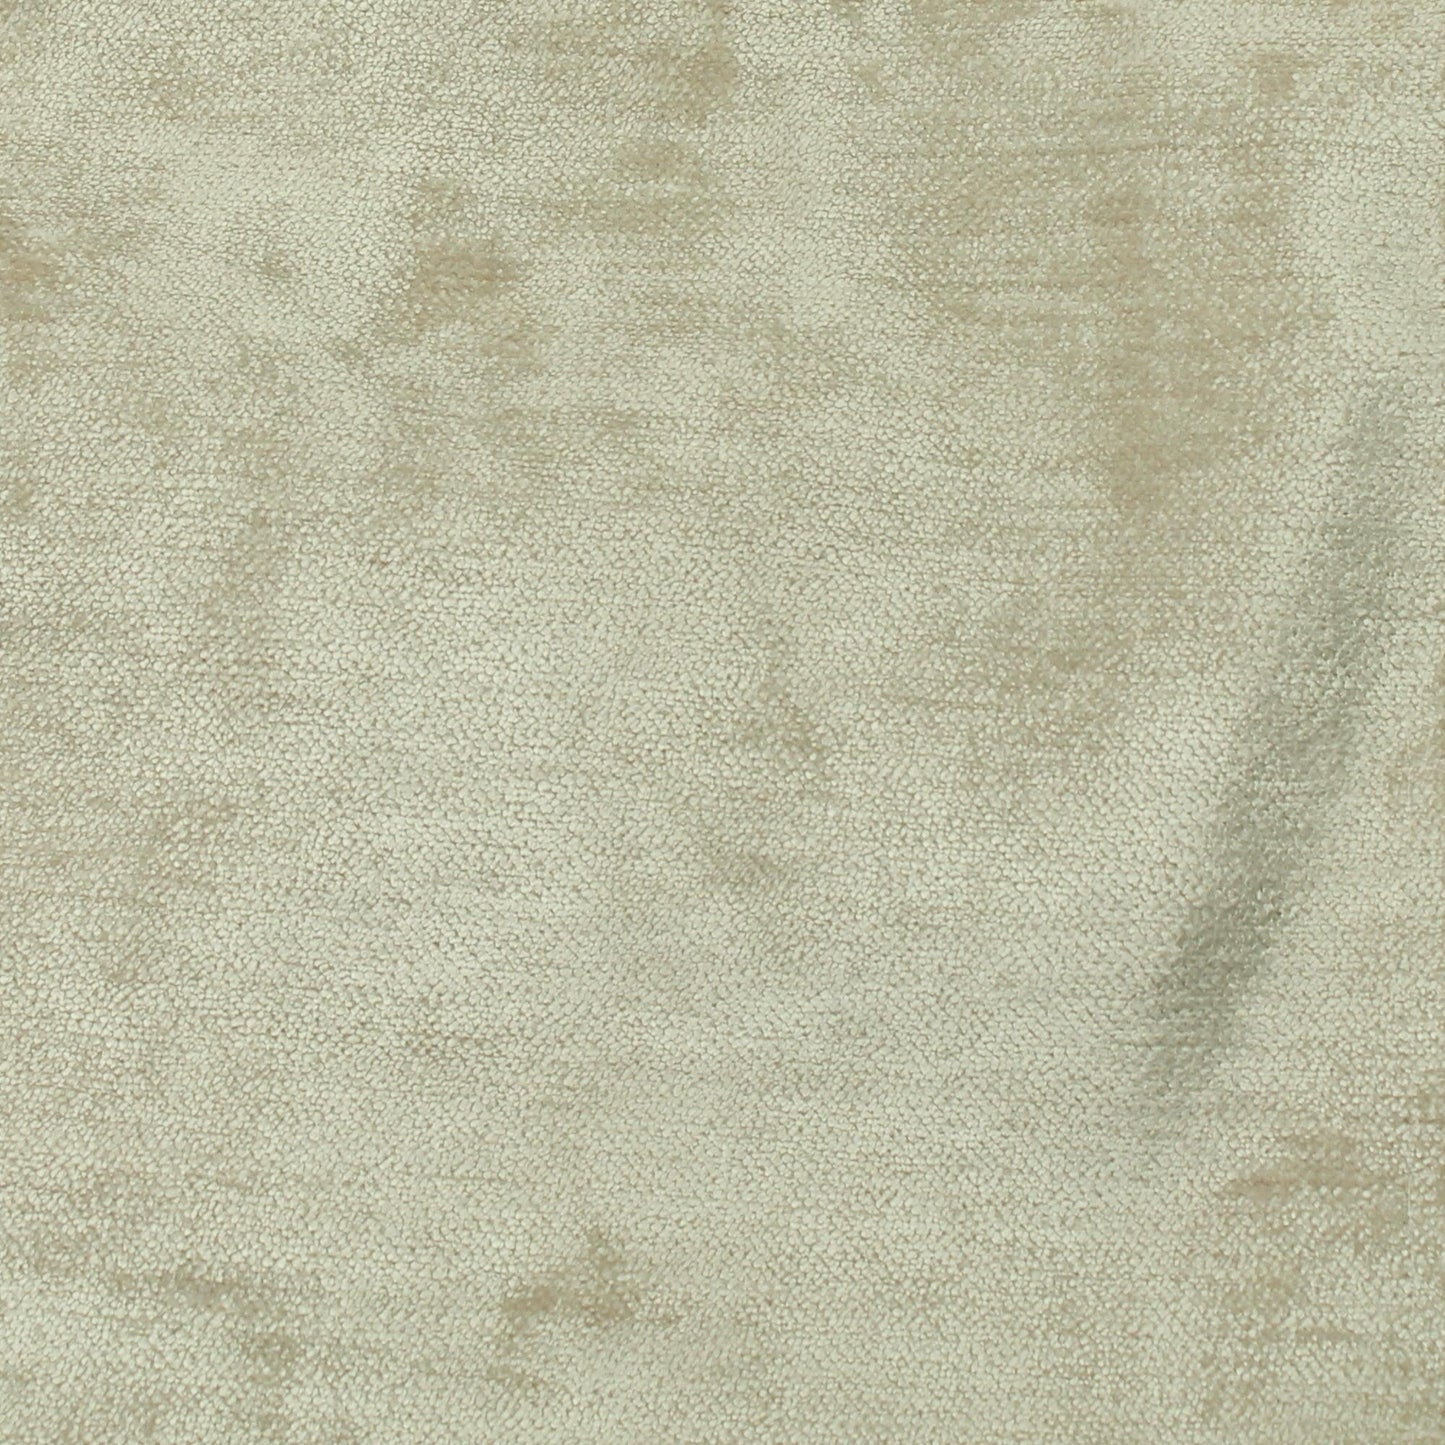 Velvet Upholstery Fabric Sand Glimmergloss